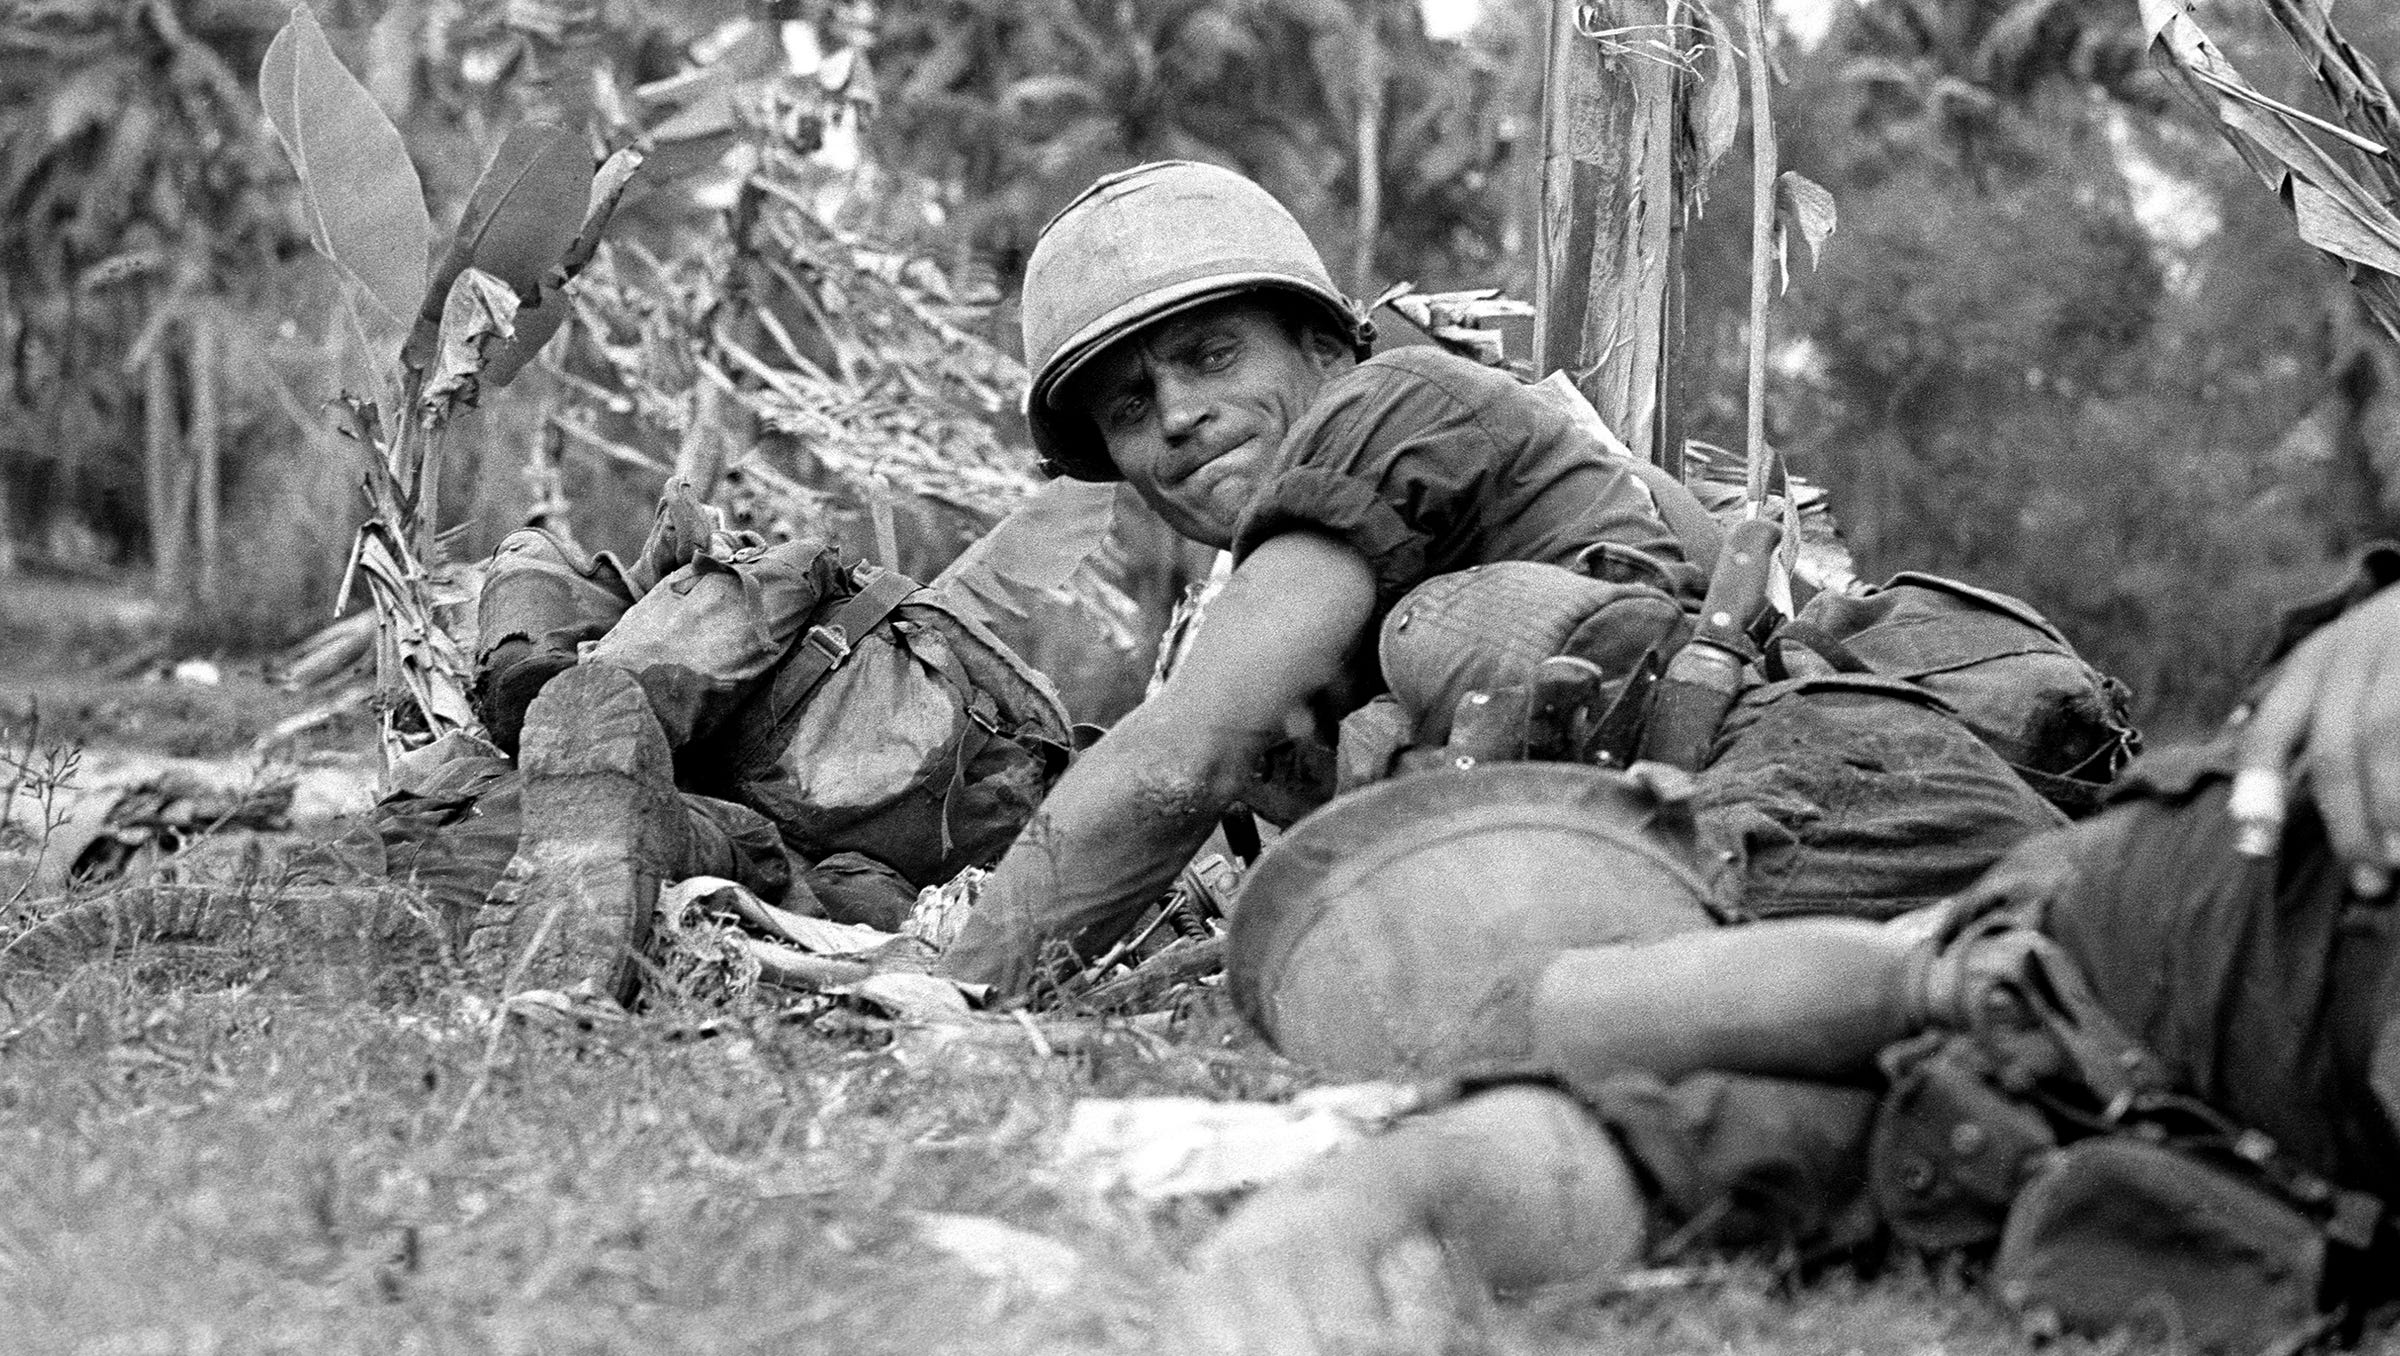 Vietnam War photos by Pulitzer Prize-winning journalist